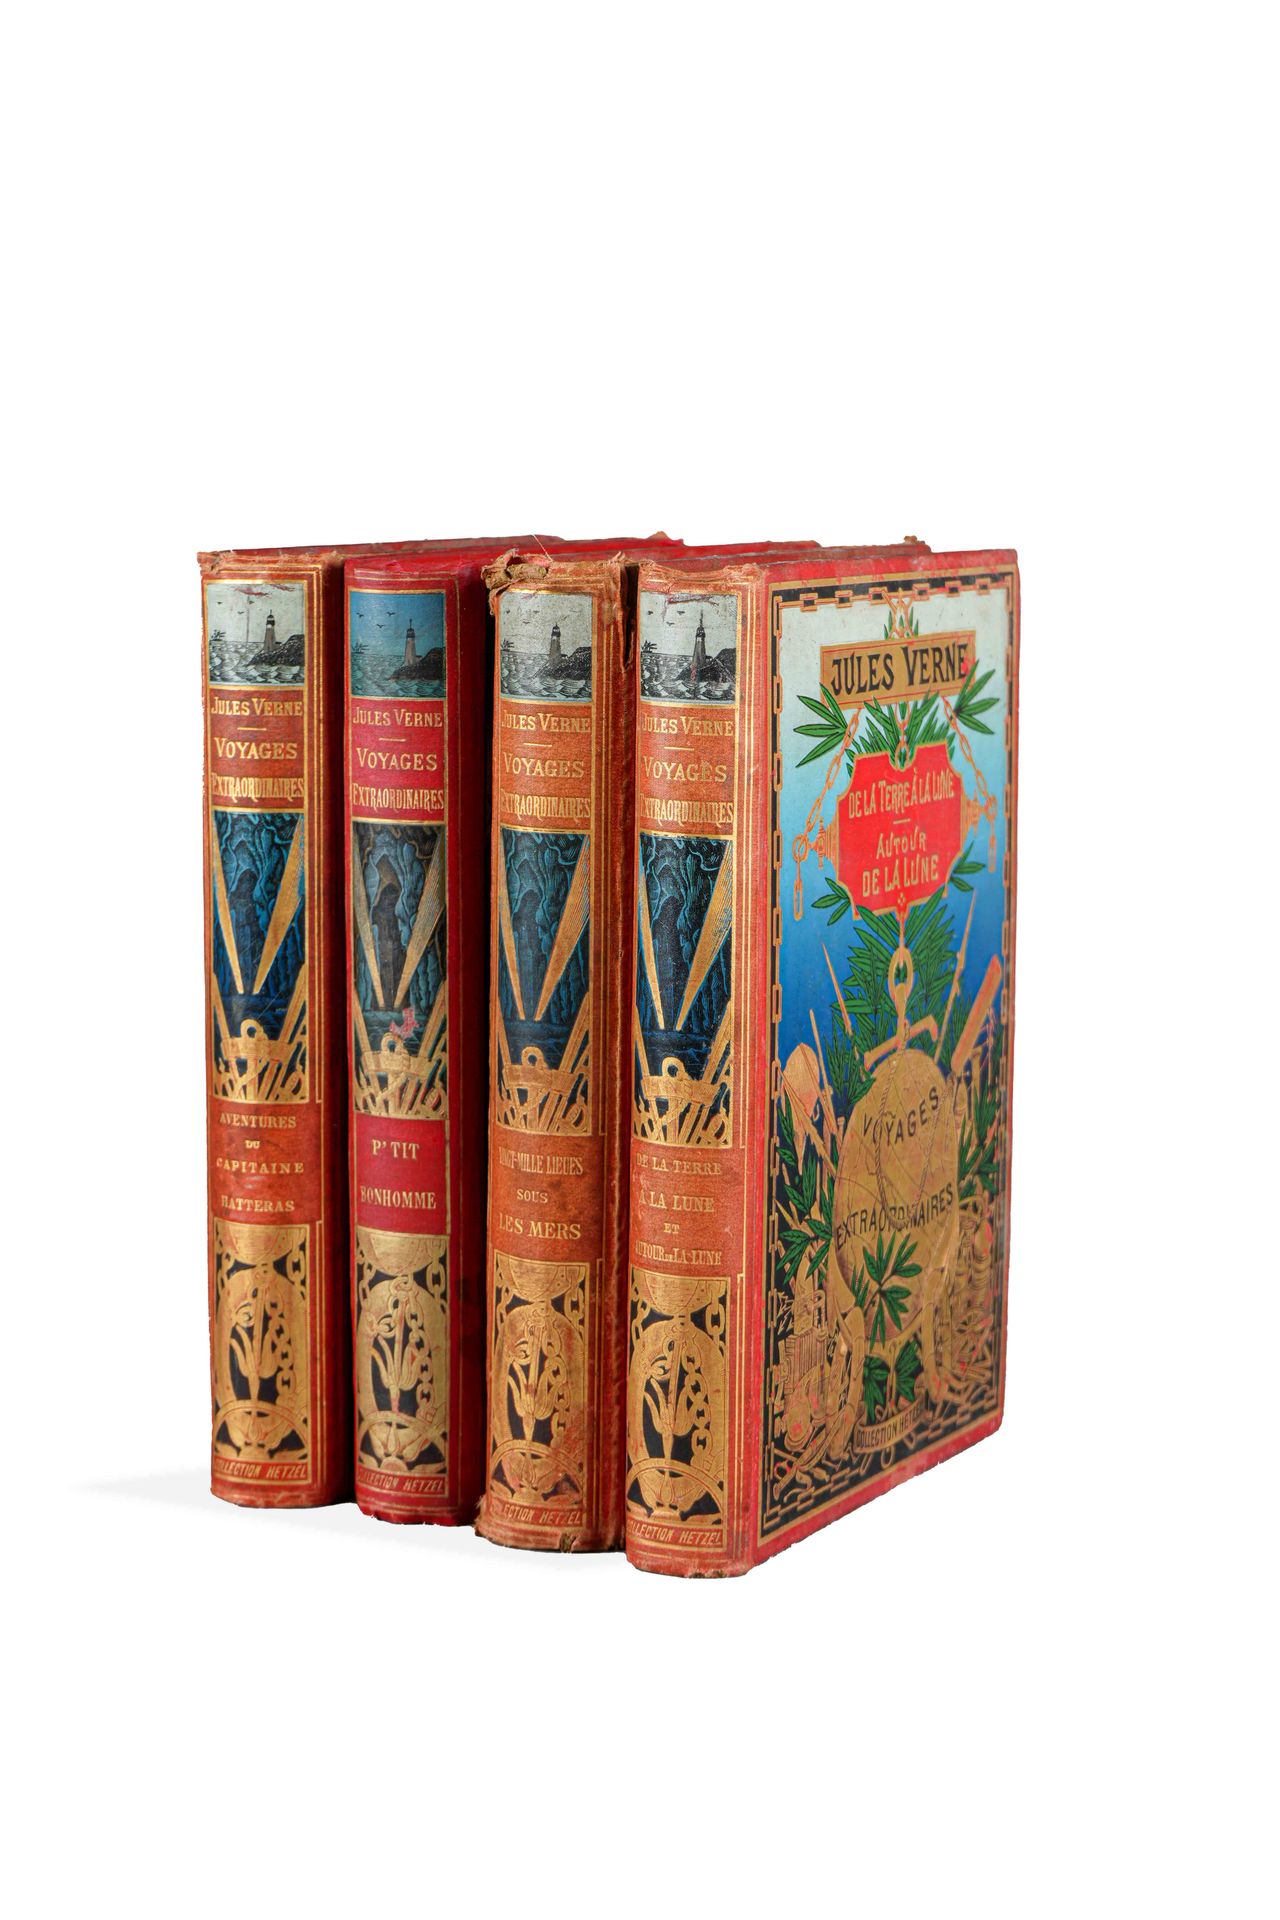 Null 儒勒-韦尔纳(1828-1905)

一套4卷装的 "Hetzel收藏"。

3卷，带灯塔和锚的书脊。

- "哈特拉斯船长的冒险"。

- 从地球到&hellip;